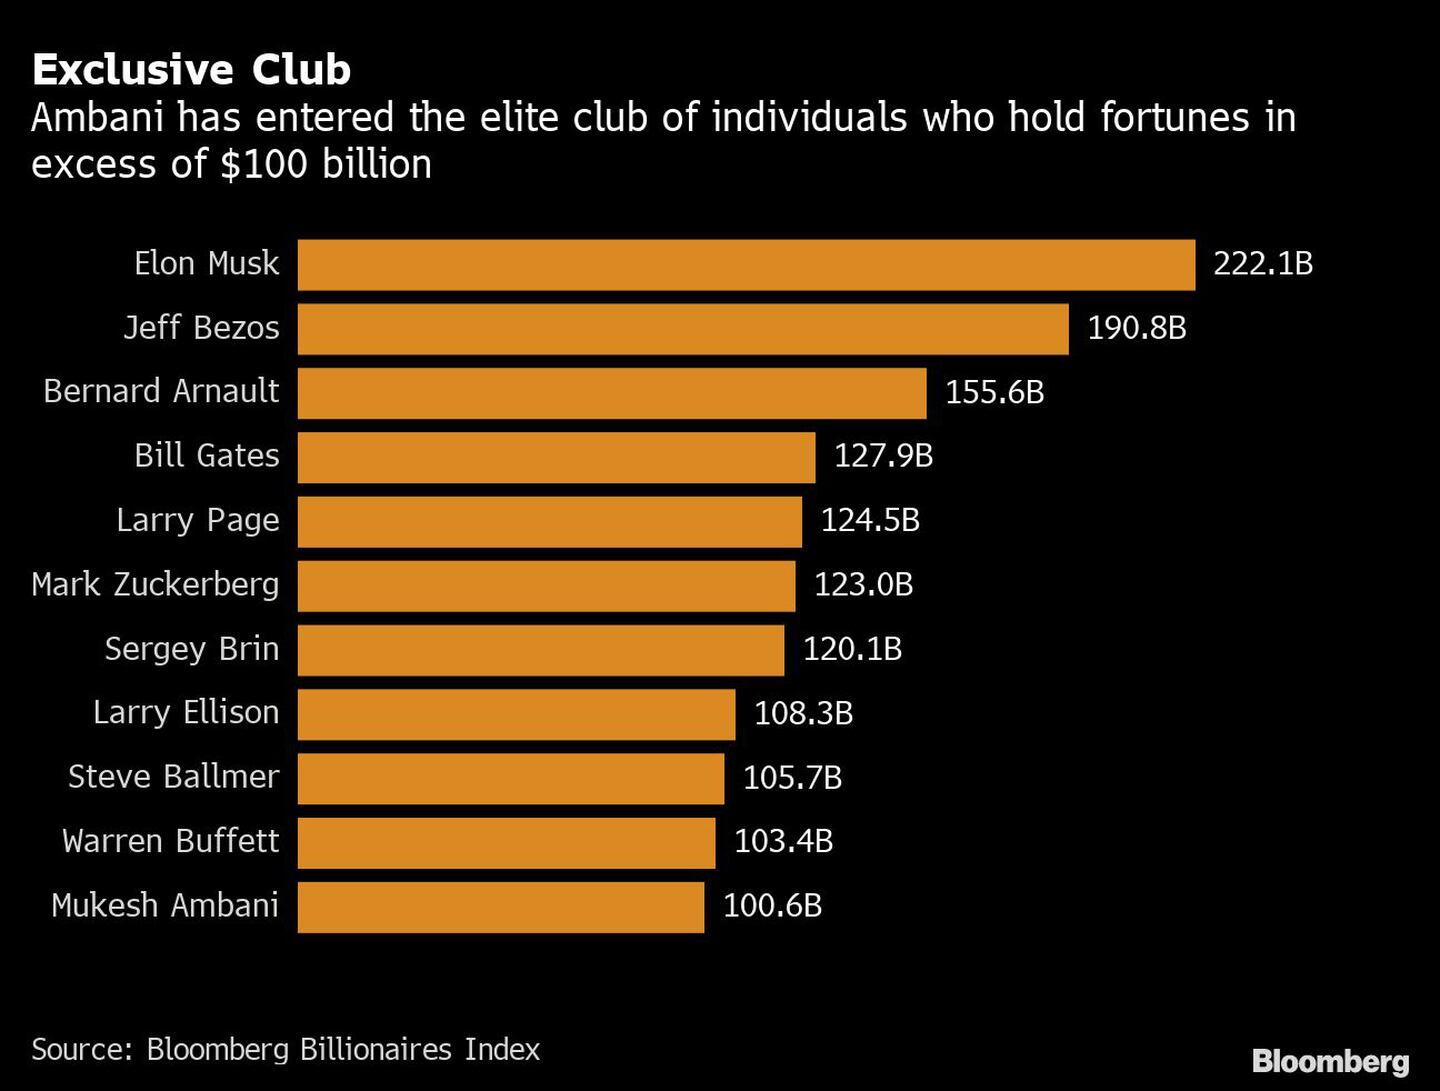 Sólo 11 personas (todos hombres) poseen fortunas valoradas en más de 100.000 millones de dólaresdfd